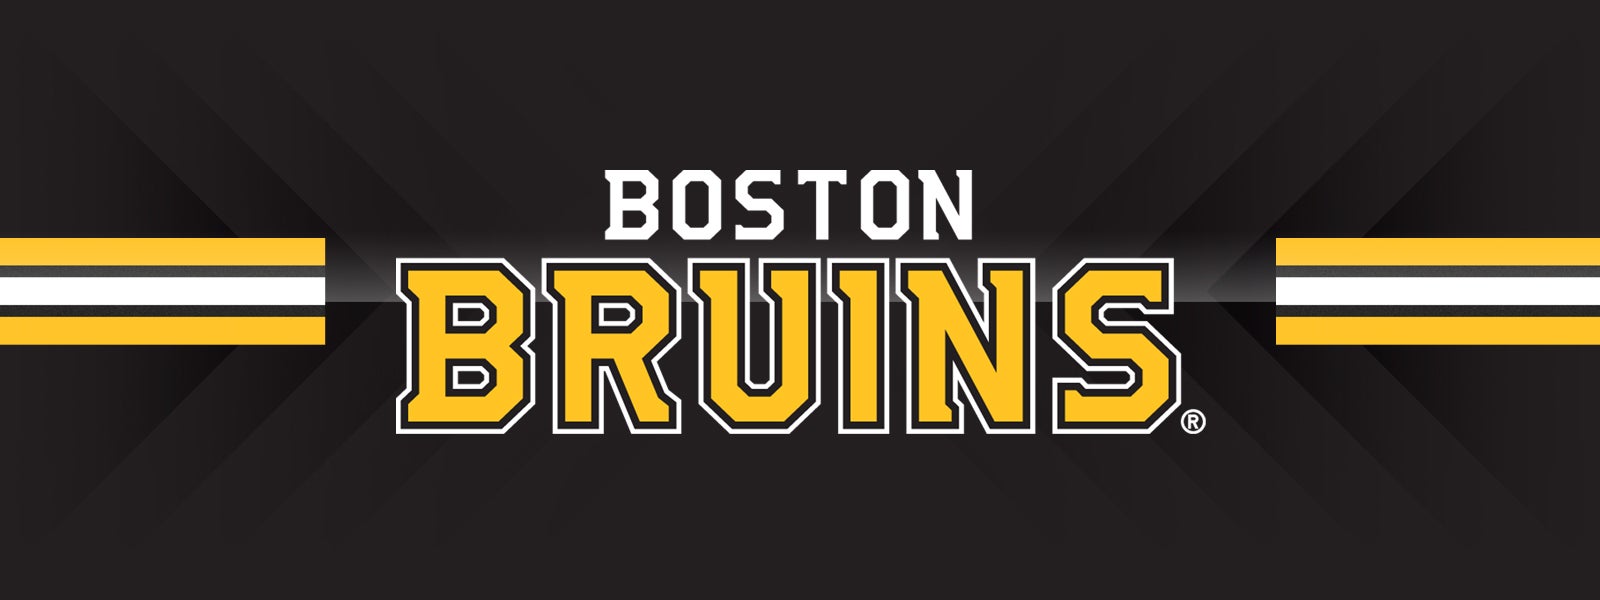  Bruins vs. Sabres